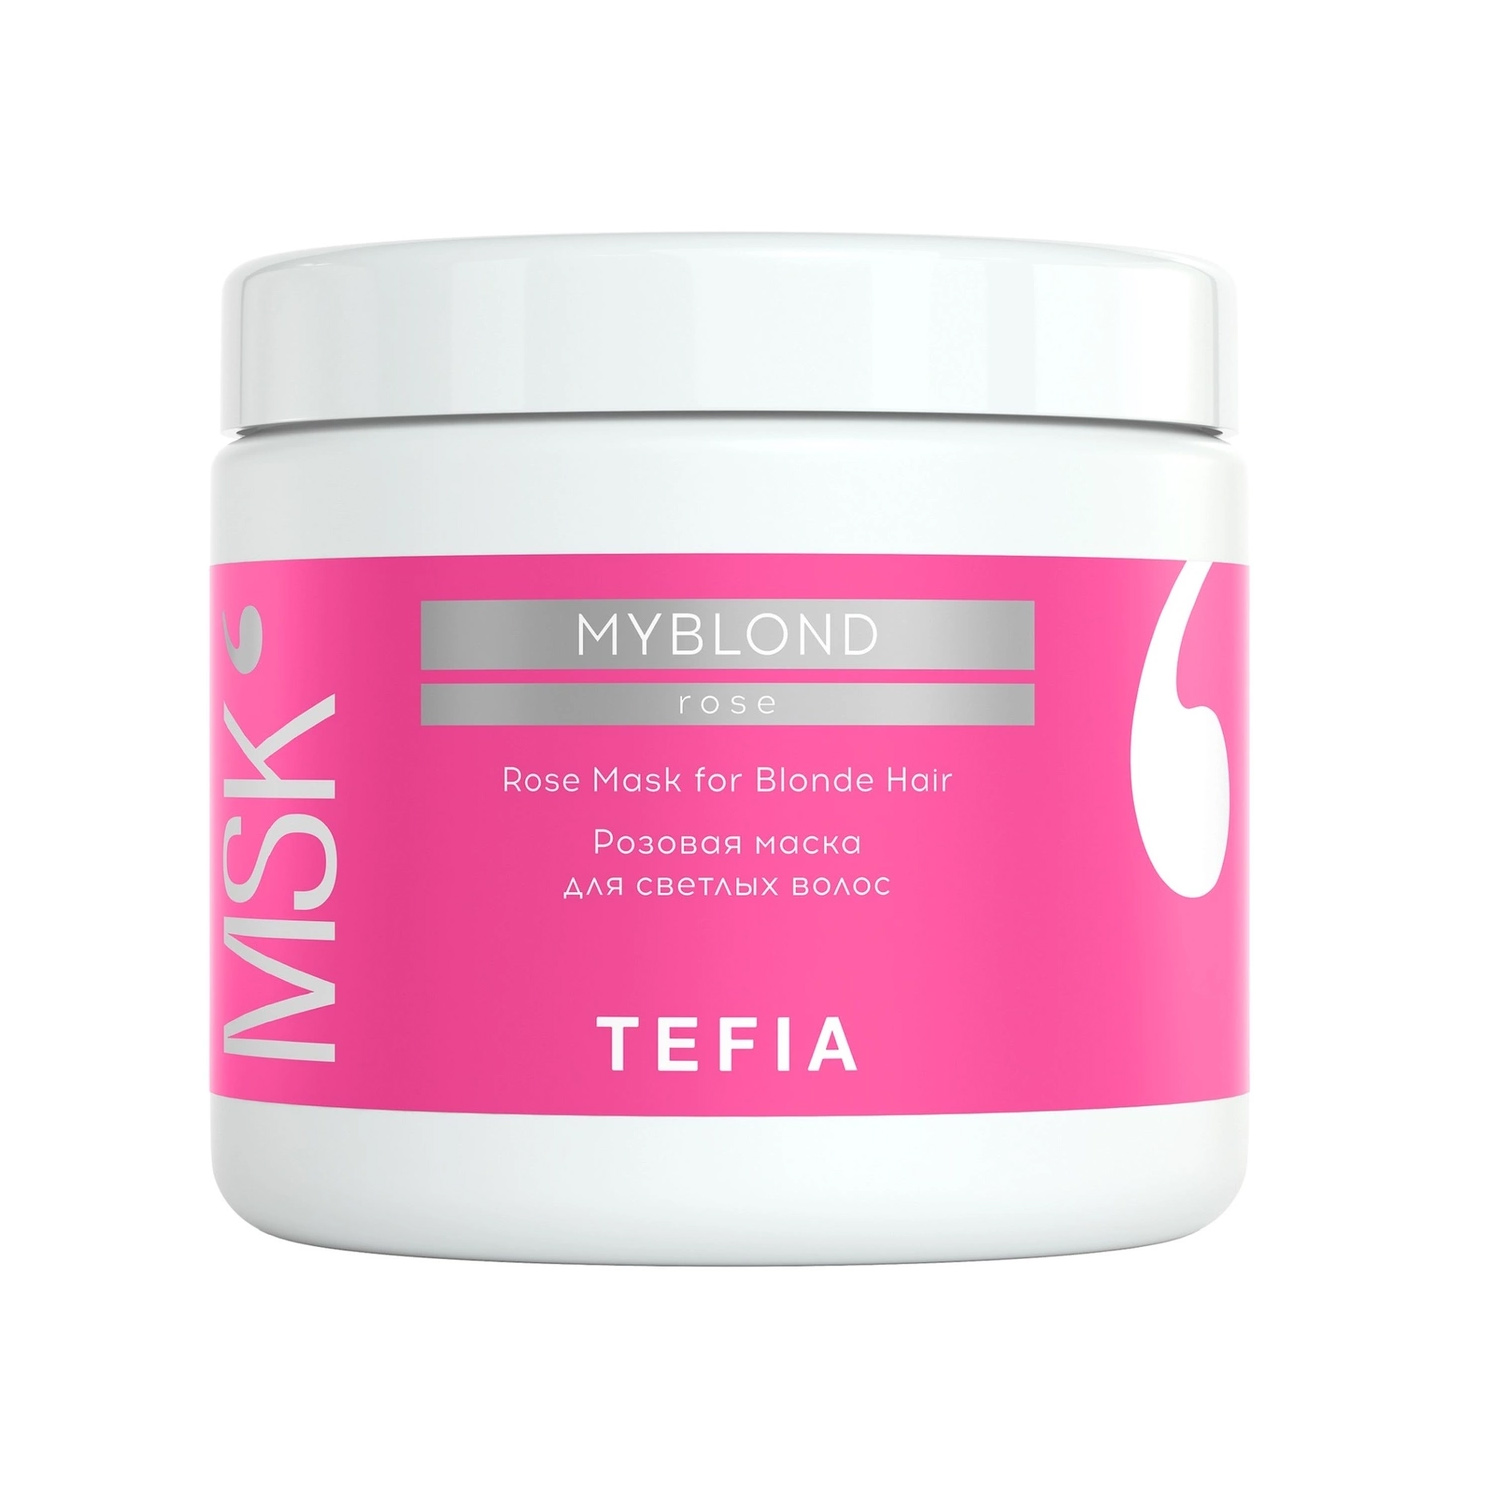 Tefia Розовая маска для светлых волос, 500 мл (Tefia, My Blond)